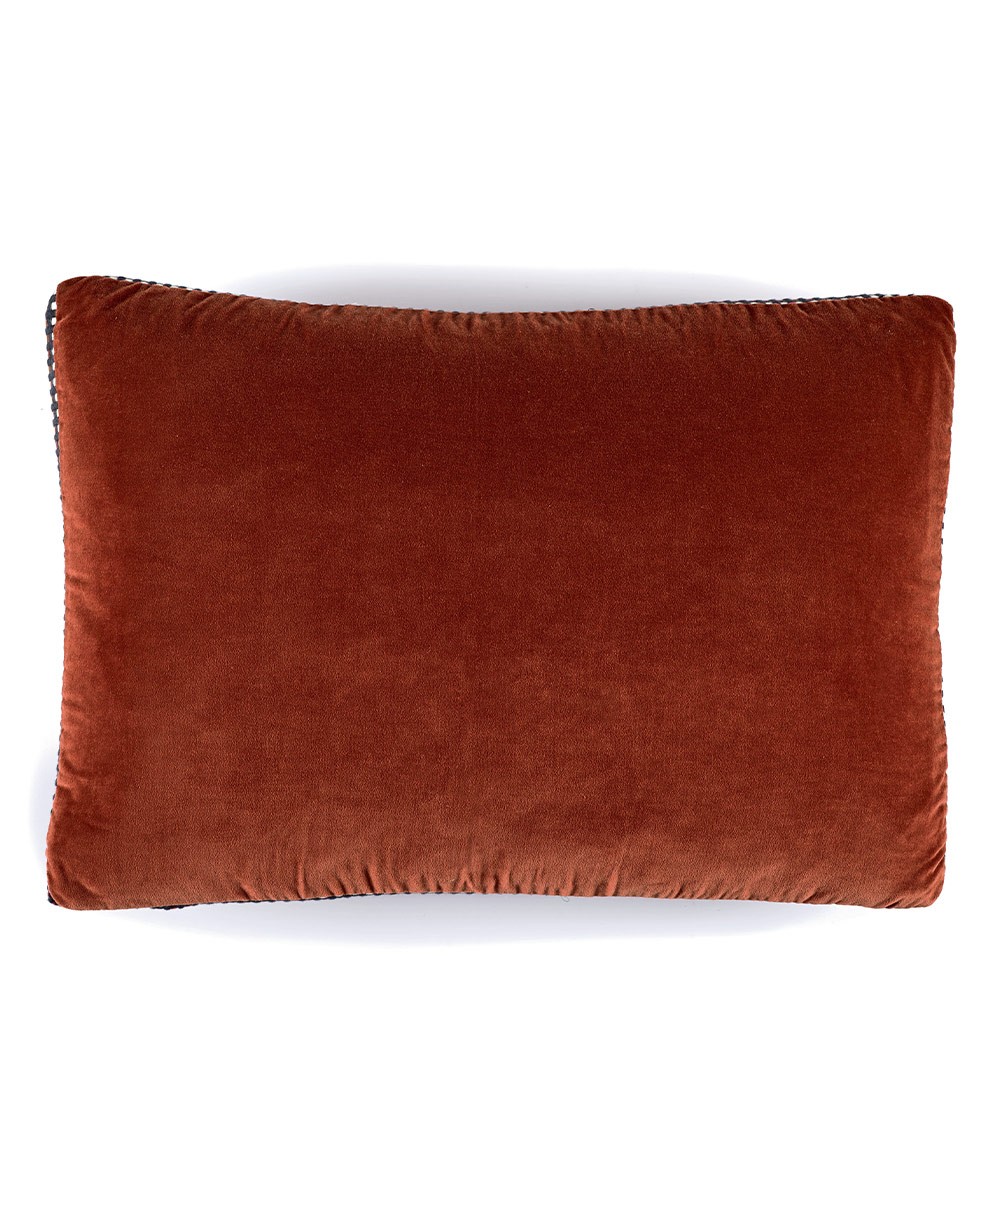 Velvet cushion Athena with piping finish